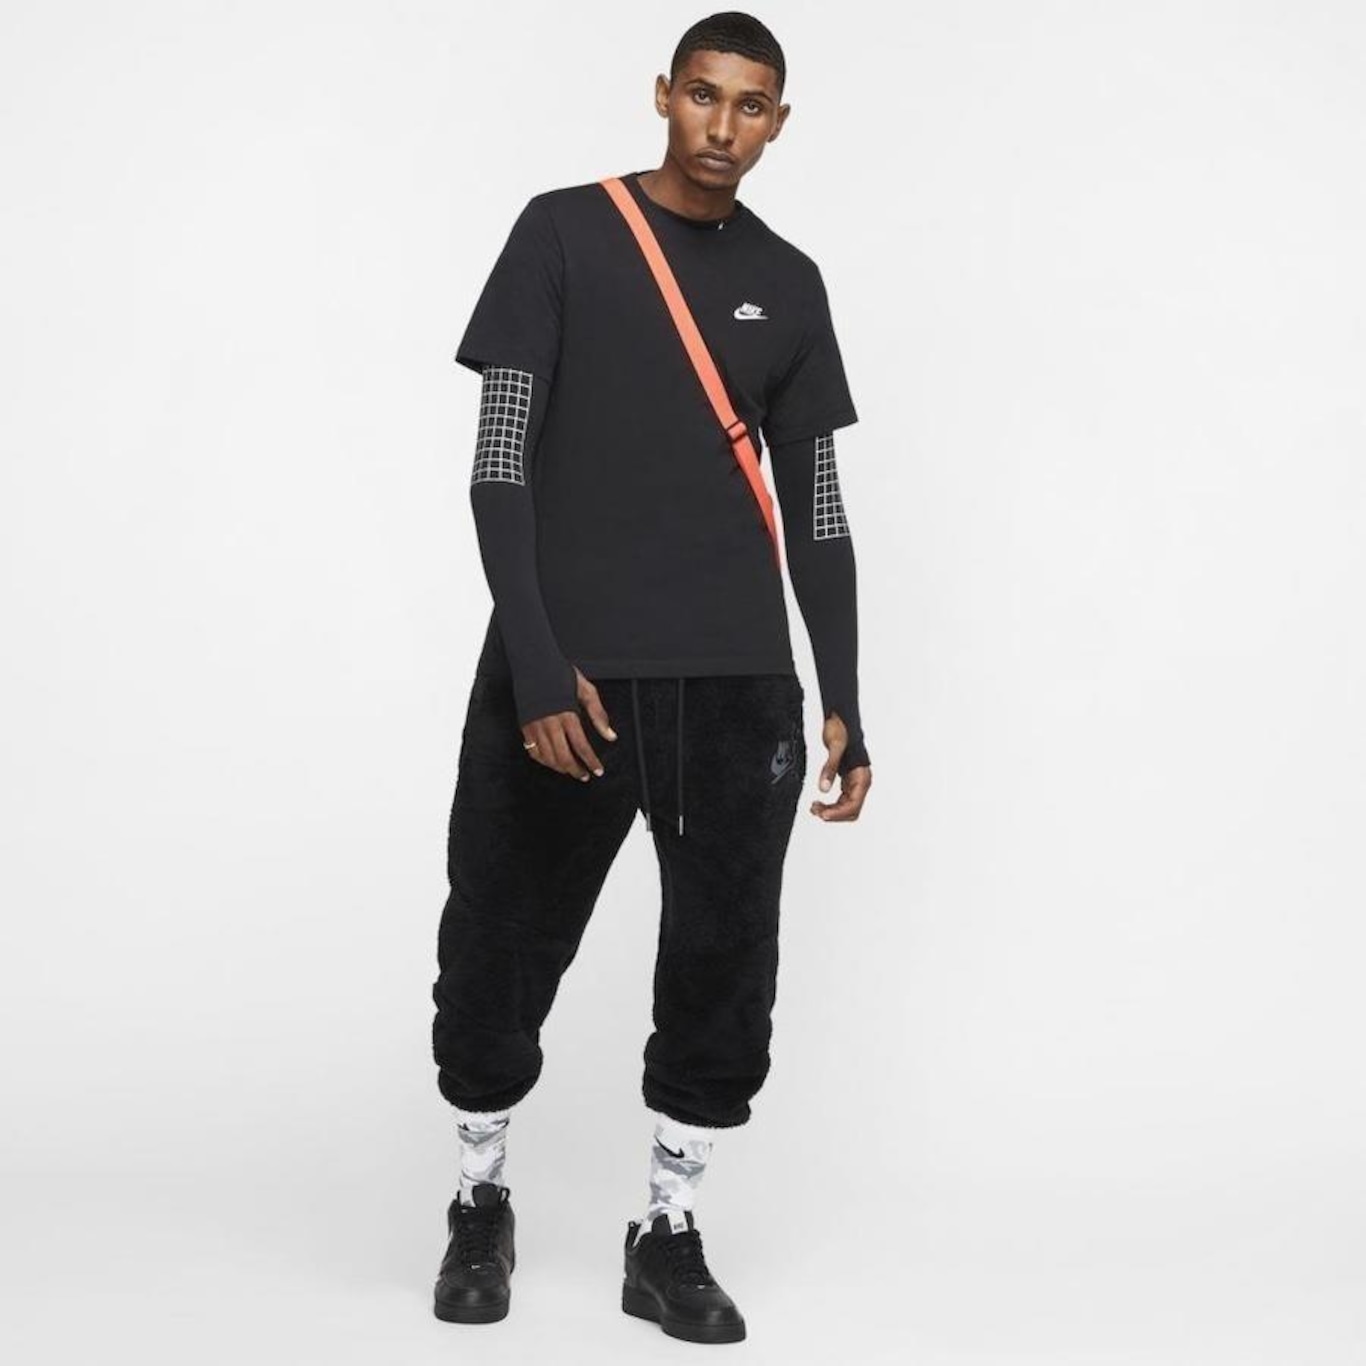 Calça de Moletom Nike Sportswear Jogger Air Flc Branca - Compre Agora